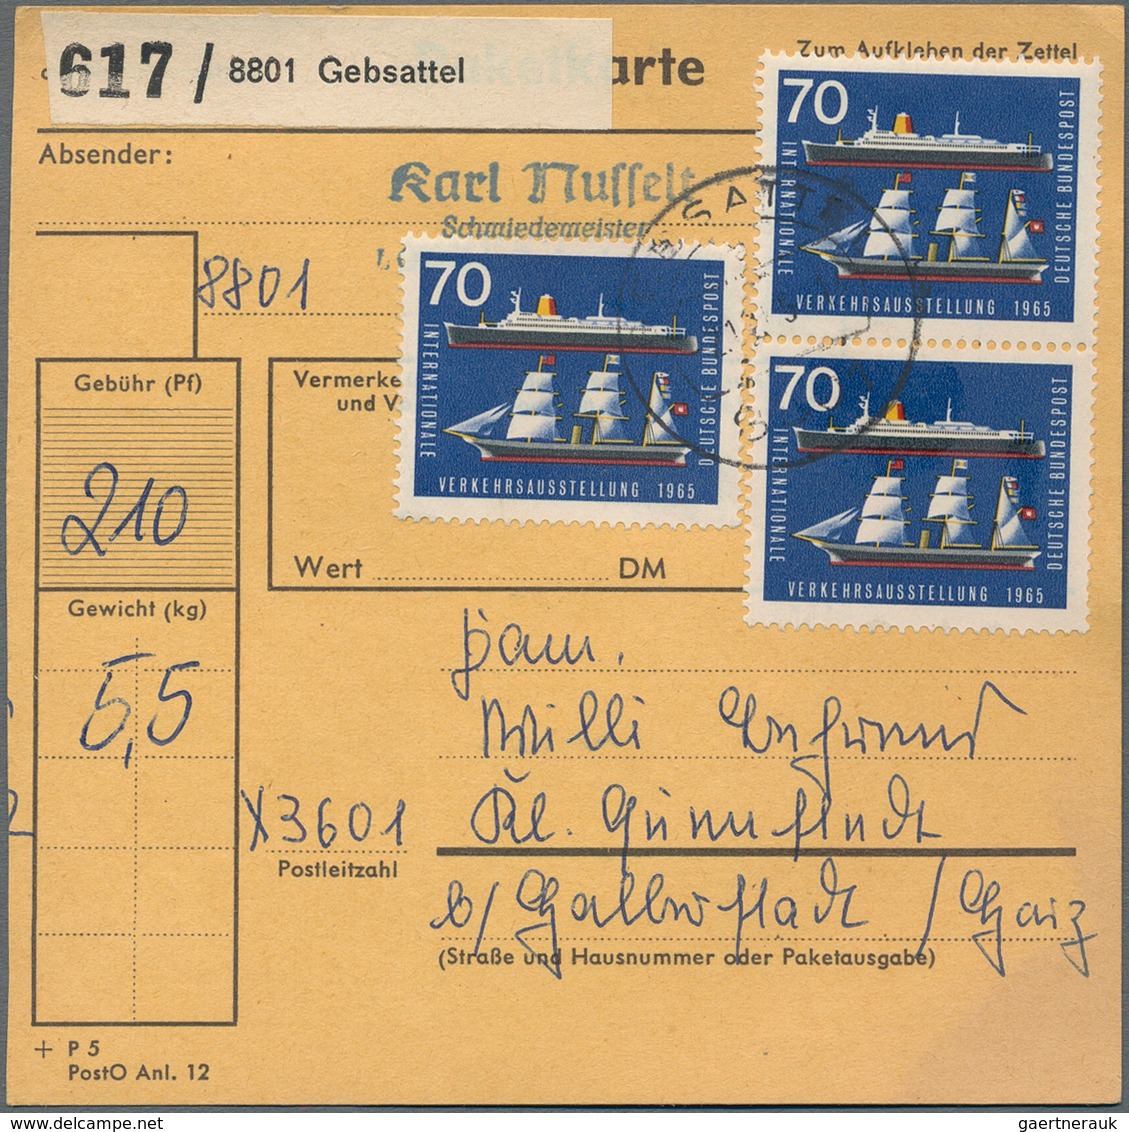 Bundesrepublik Deutschland: 1964/1973 (ca.), reichhaltiger Bestand von Paketkarten(stammteilen), mei